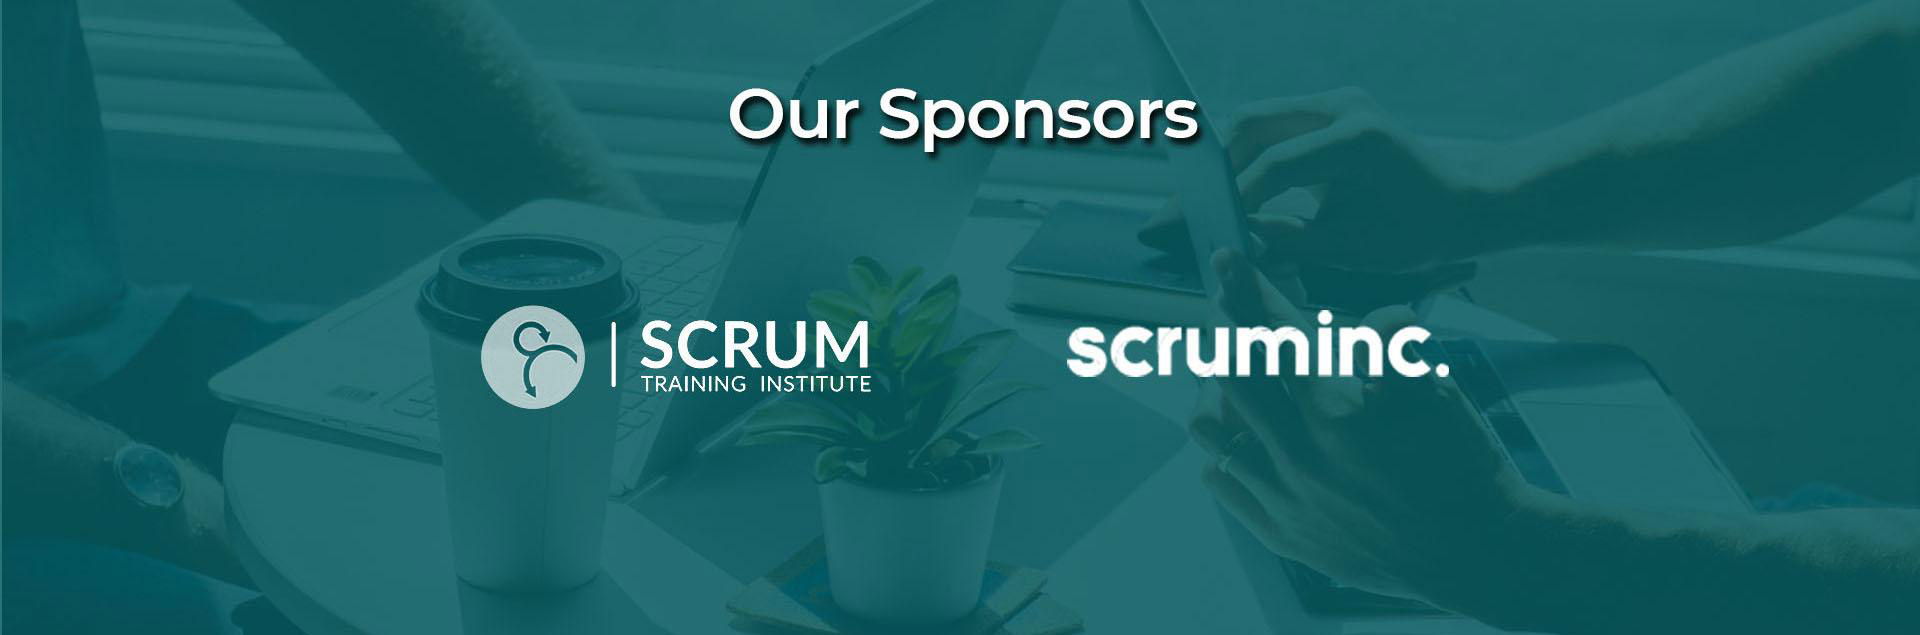 Our Sponsors Scrum Training Institute, Scrum Inc